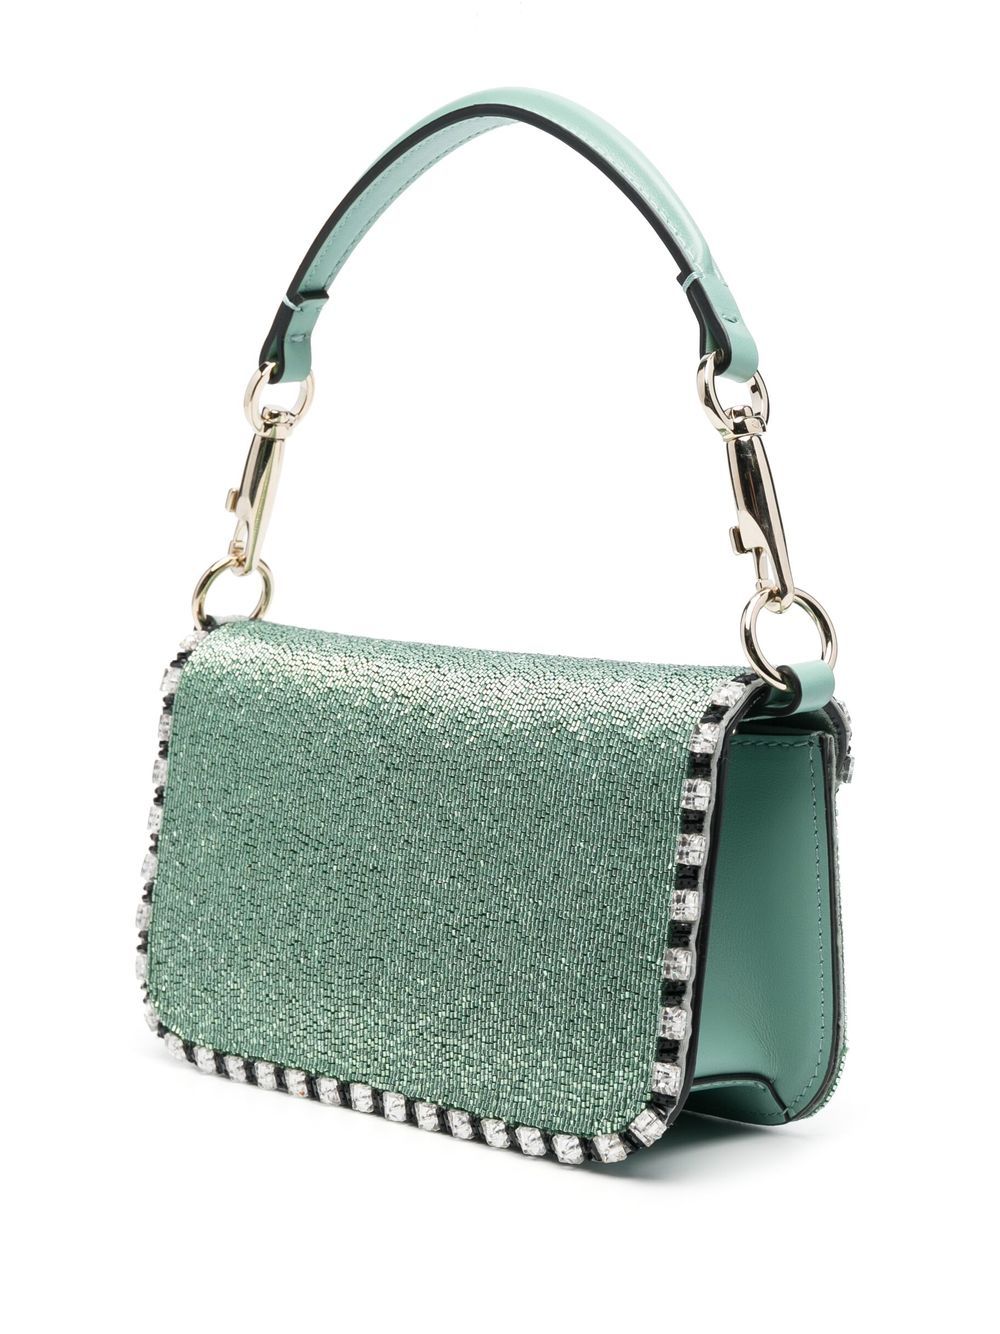 Valentino Small Locò Crystal Embellished Shoulder Bag